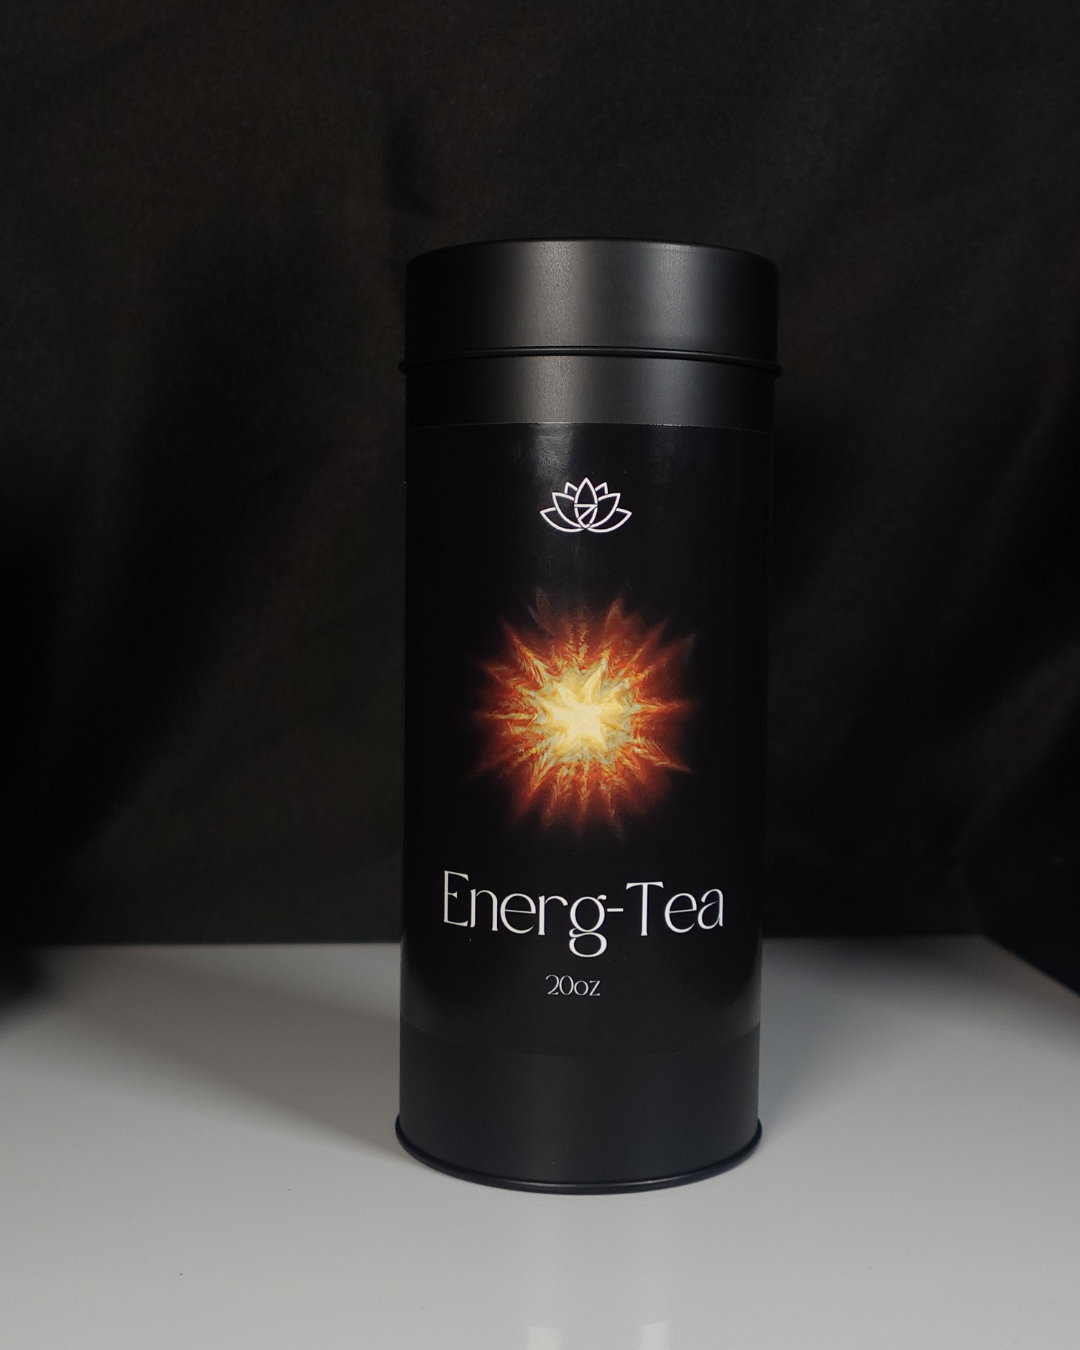 Energ-Tea